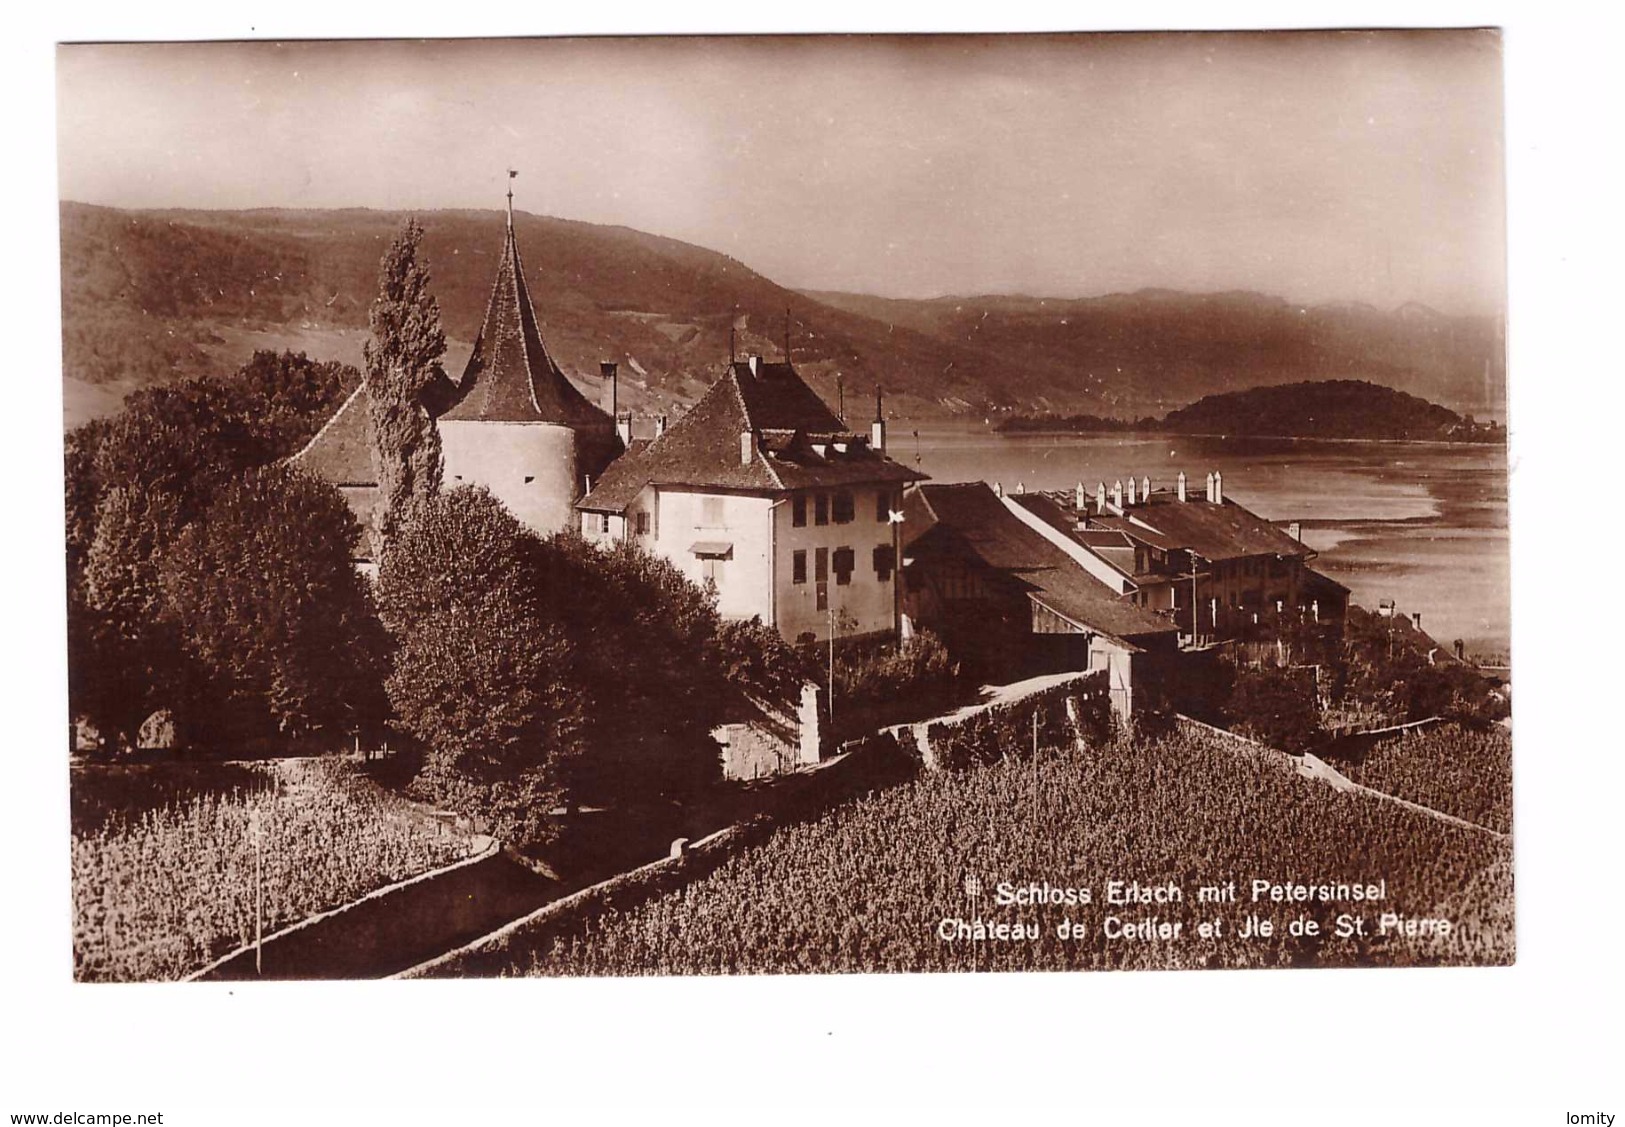 Suisse Schloss Erlach Mit Petersinsel Chateau De Cerlier Et Ile De St Pierre Timbre + Cachet Erlach 1923 - Cerlier